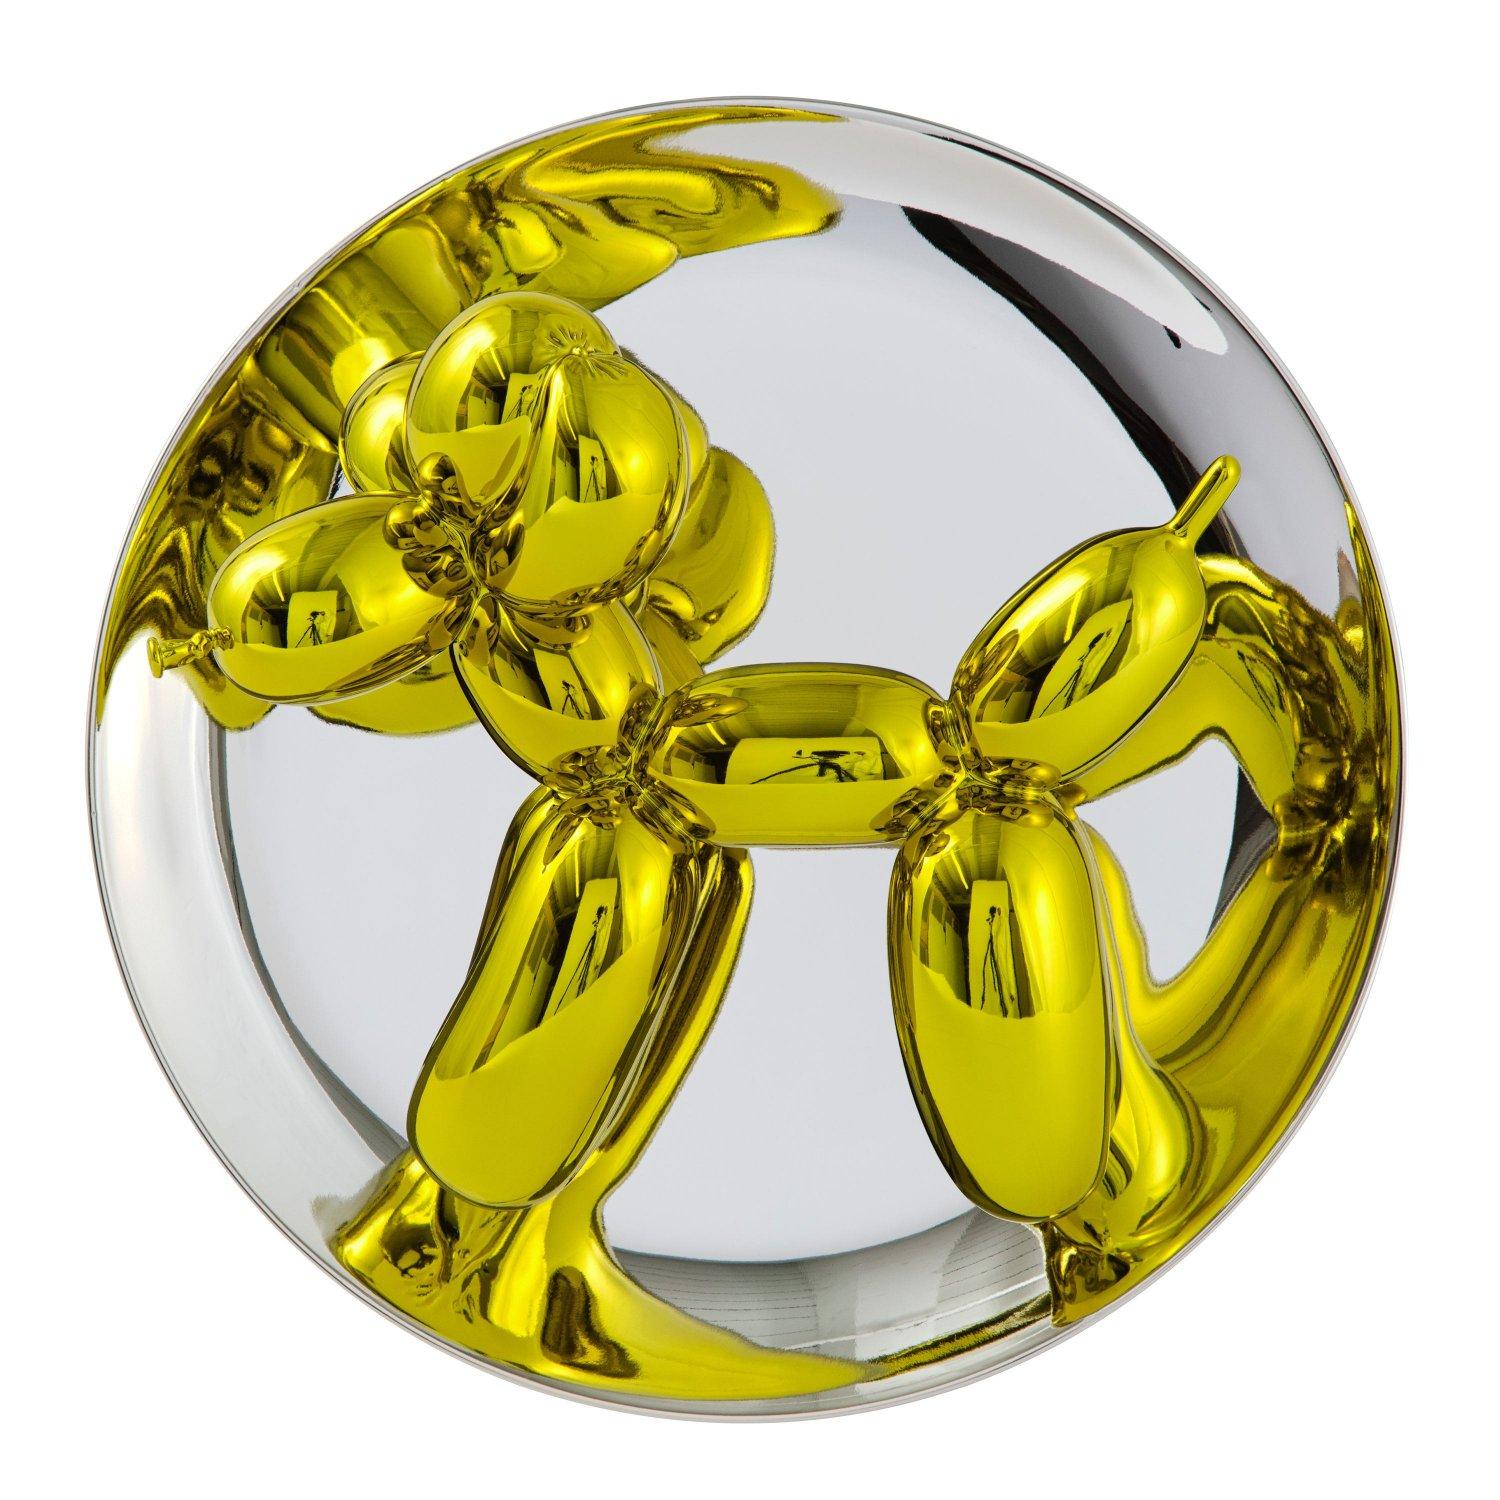 Balloon Dog (Yellow) - Jeff Koons, Contemporain, 21ème siècle, Sculpture, Décoration, Edition limitée

Porcelaine de Limoges avec revêtement chromatique métallisé
Edition de 2300
Signé et numéroté
En parfait état, tel qu'il a été acquis auprès du